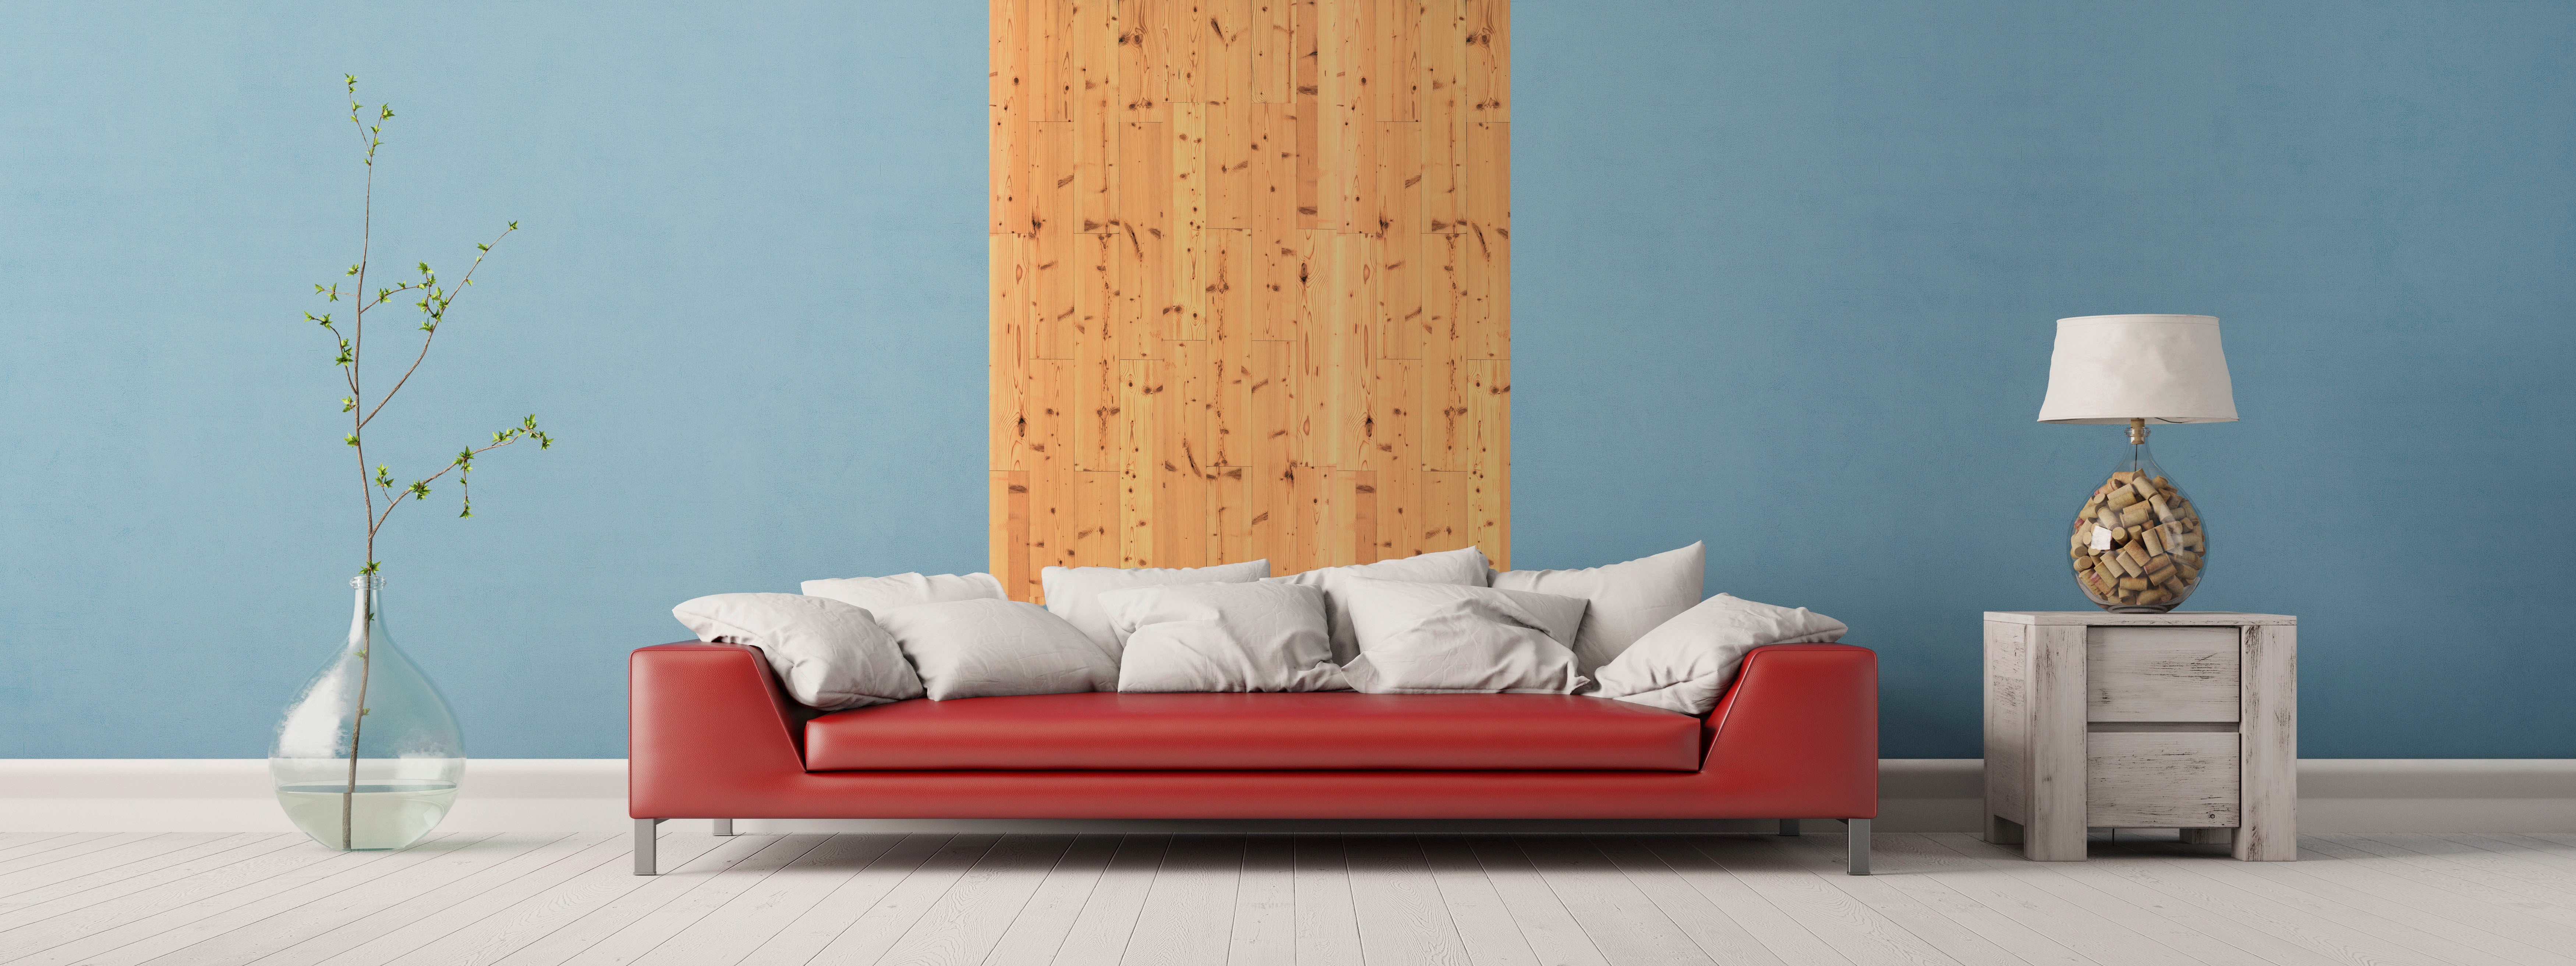 Wohnzimmer mit roter Couch und Fichten Wandpaneelen